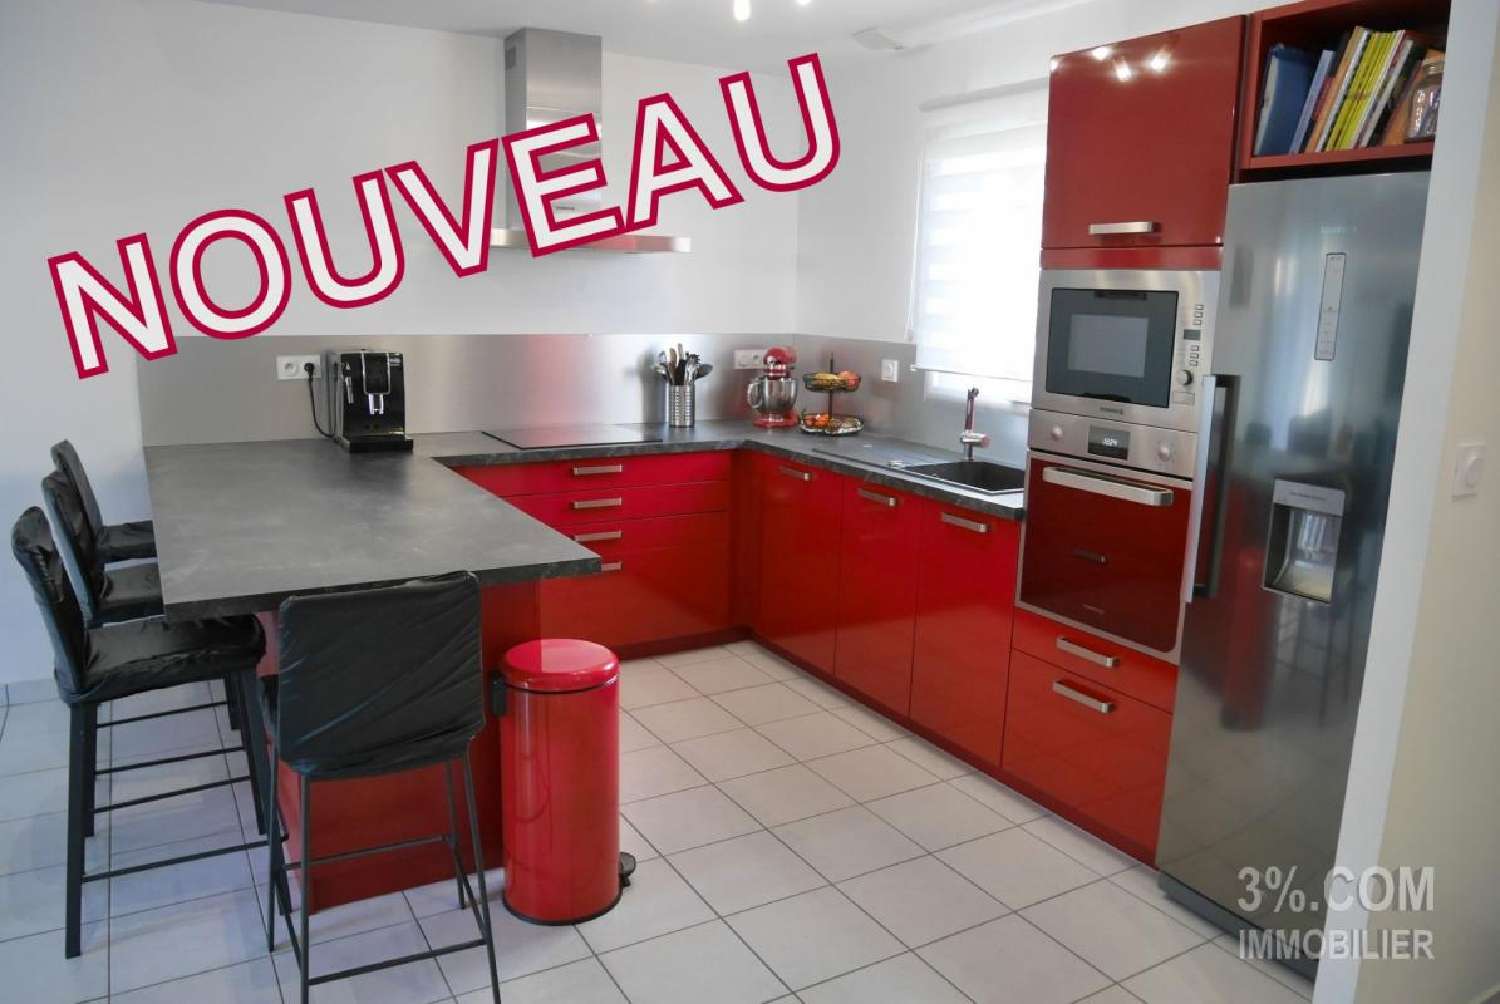  à vendre maison Savenay Loire-Atlantique 3